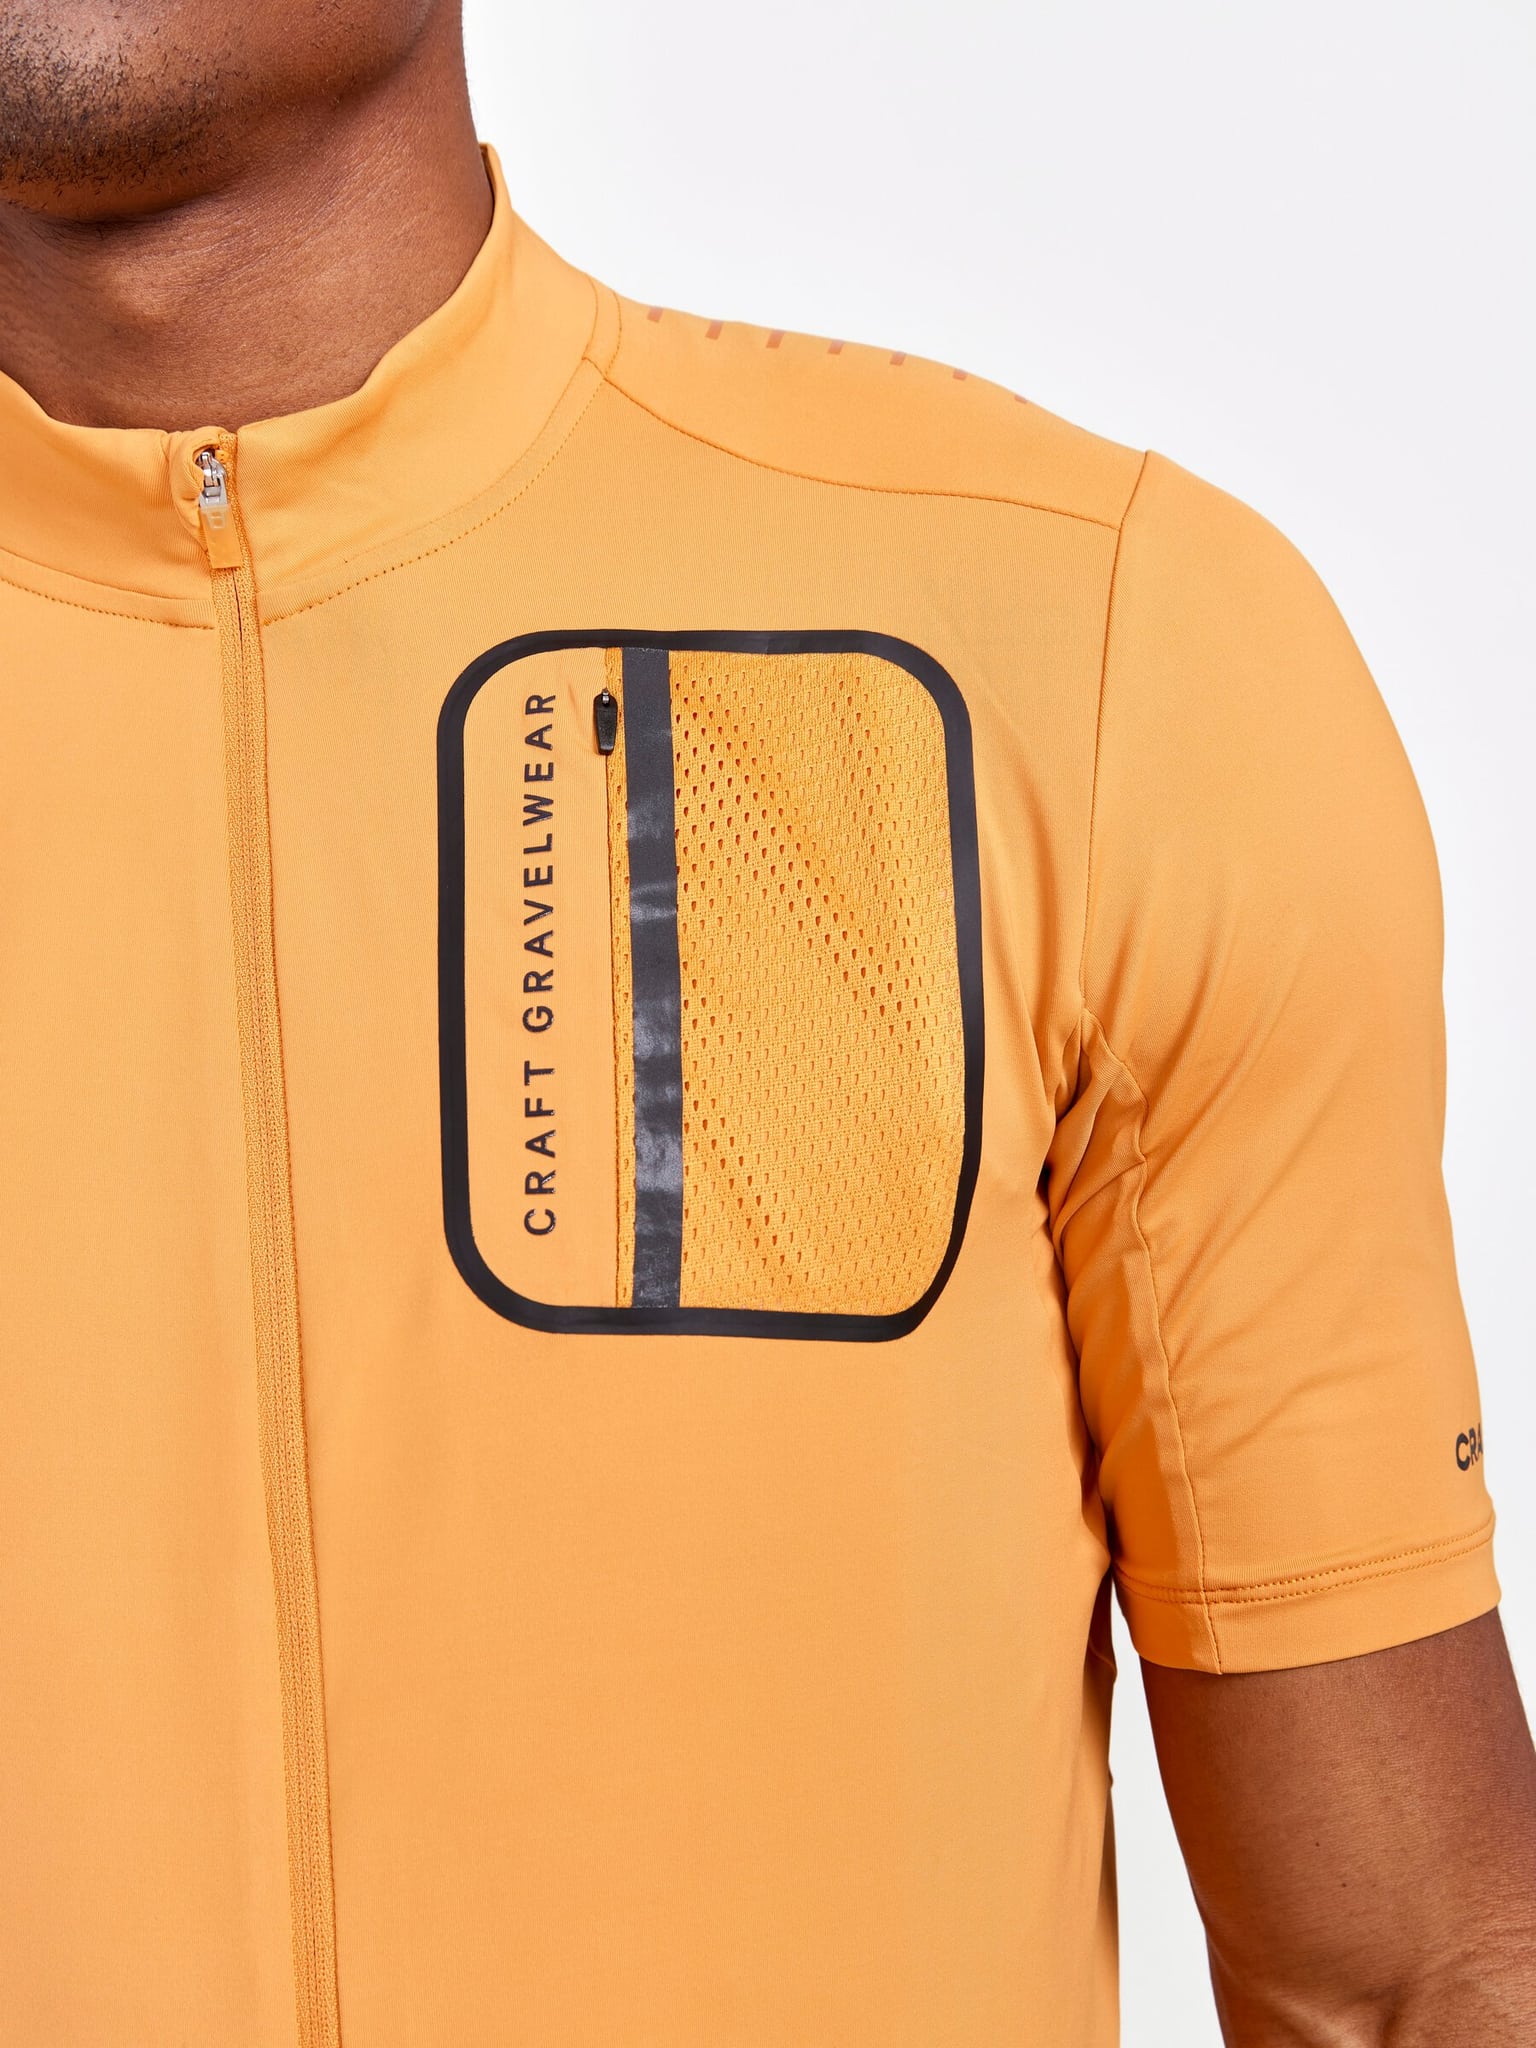 Craft Craft ADV Offroad SS Jersey Maglietta da bici arancio-chiaro 4